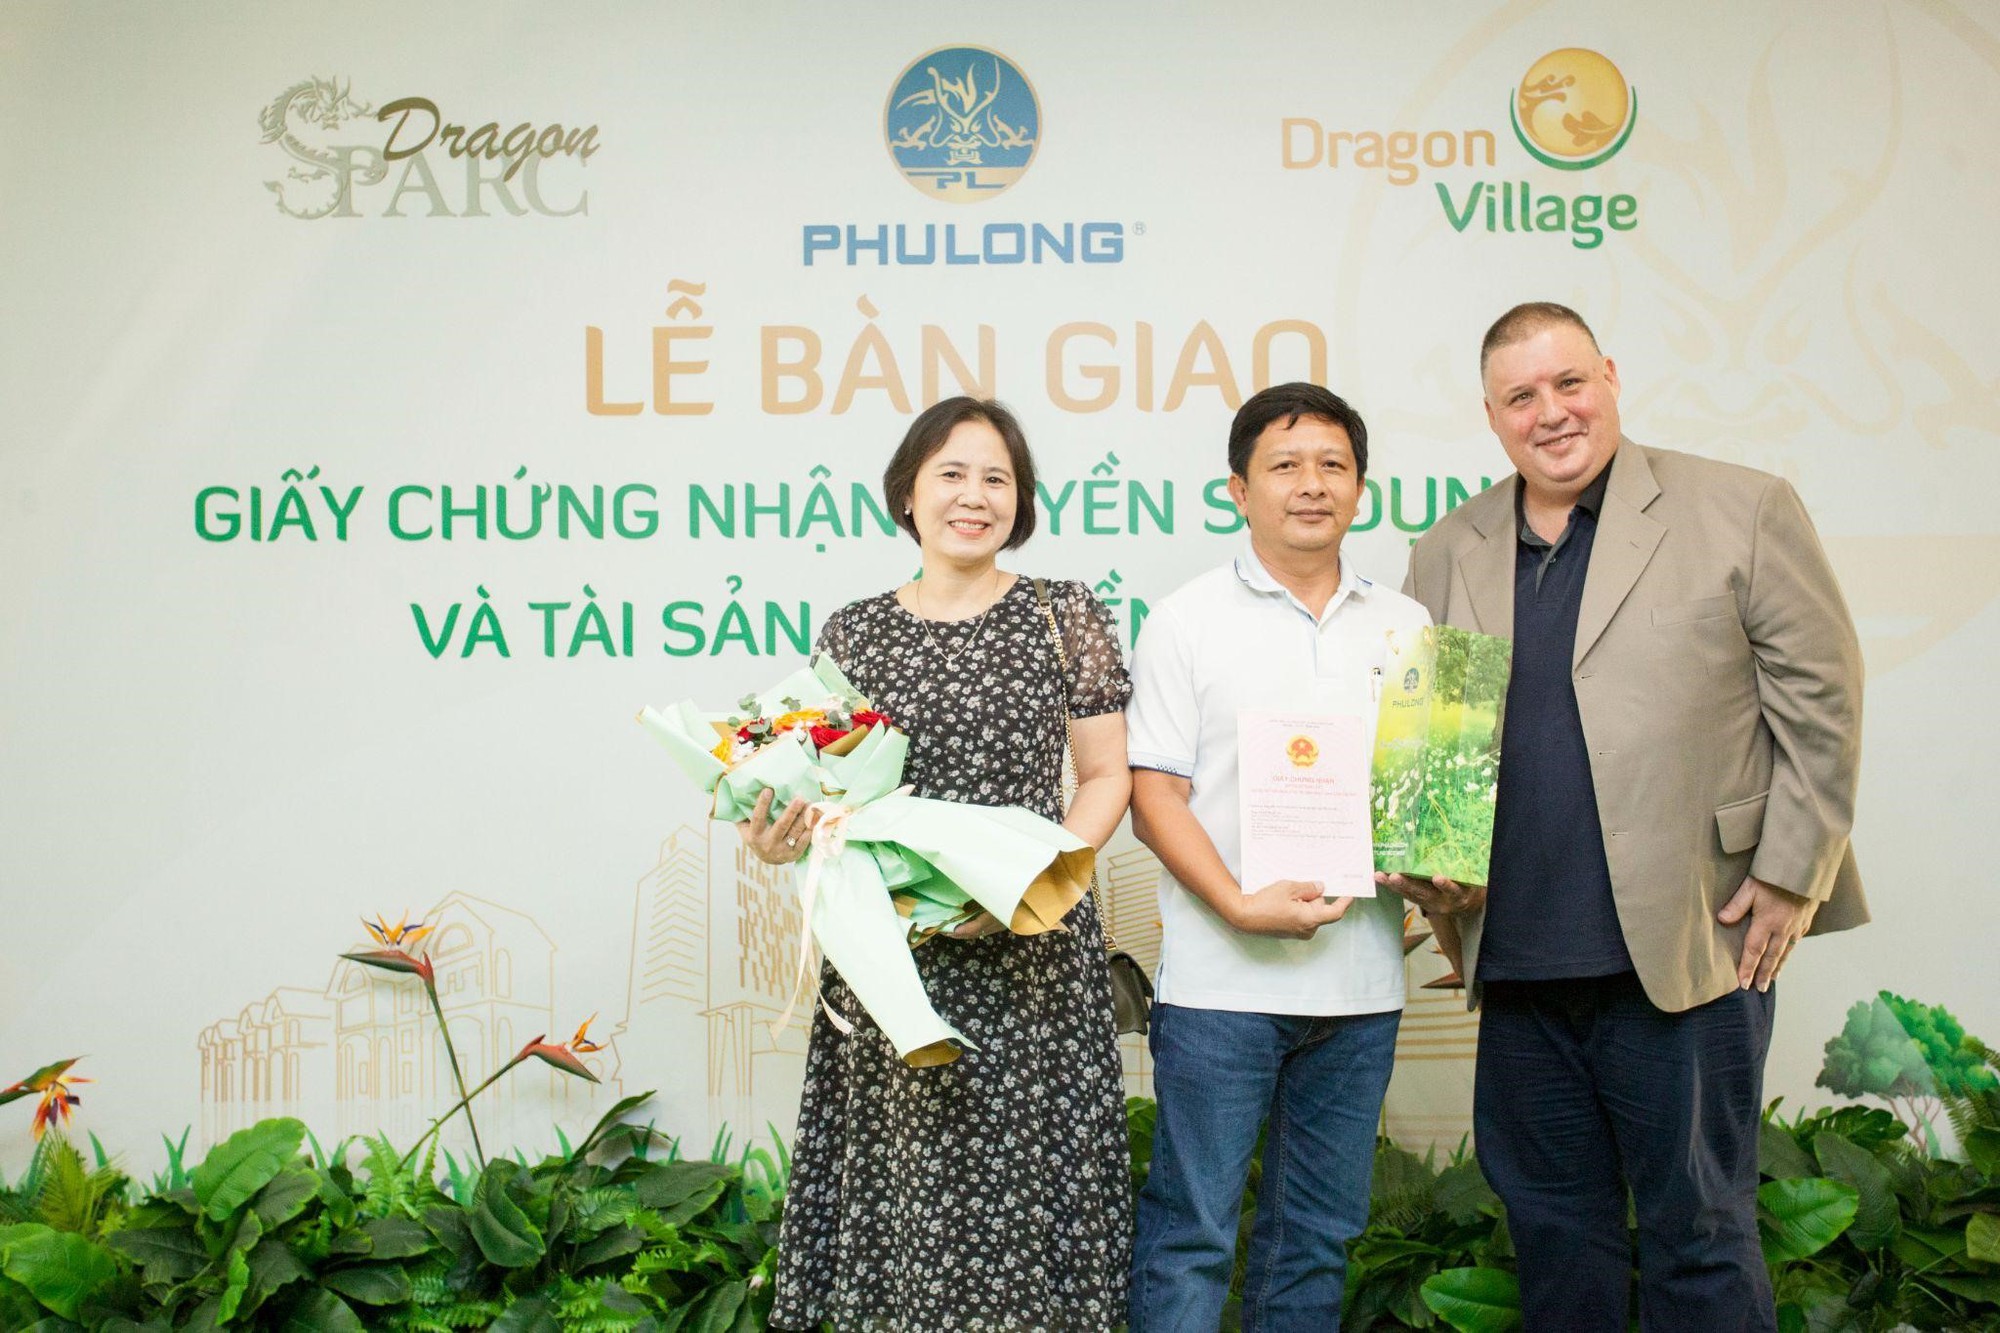 Phú Long chính thức trao sổ hồng cho cư dân Dragon Village và Dragon Parc - Ảnh 7.